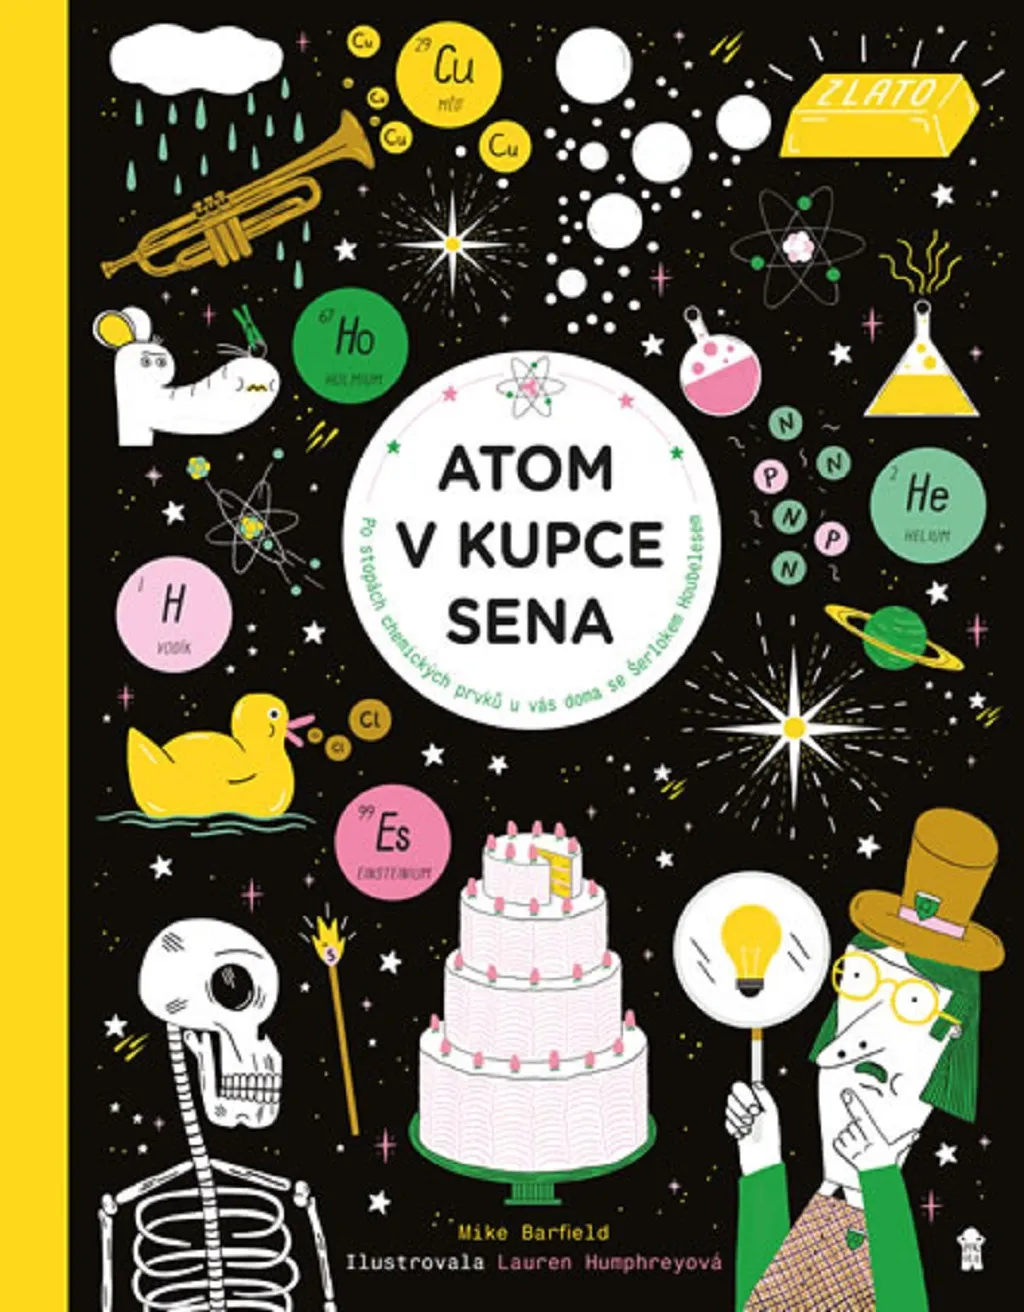 V kategorii populárně-naučné literatury pro děti a mládež vybrala porota knihu Mikea Barfielda Atom v kupce sena, kterou přeložili Sabina Poláková a Jan Bružeňák